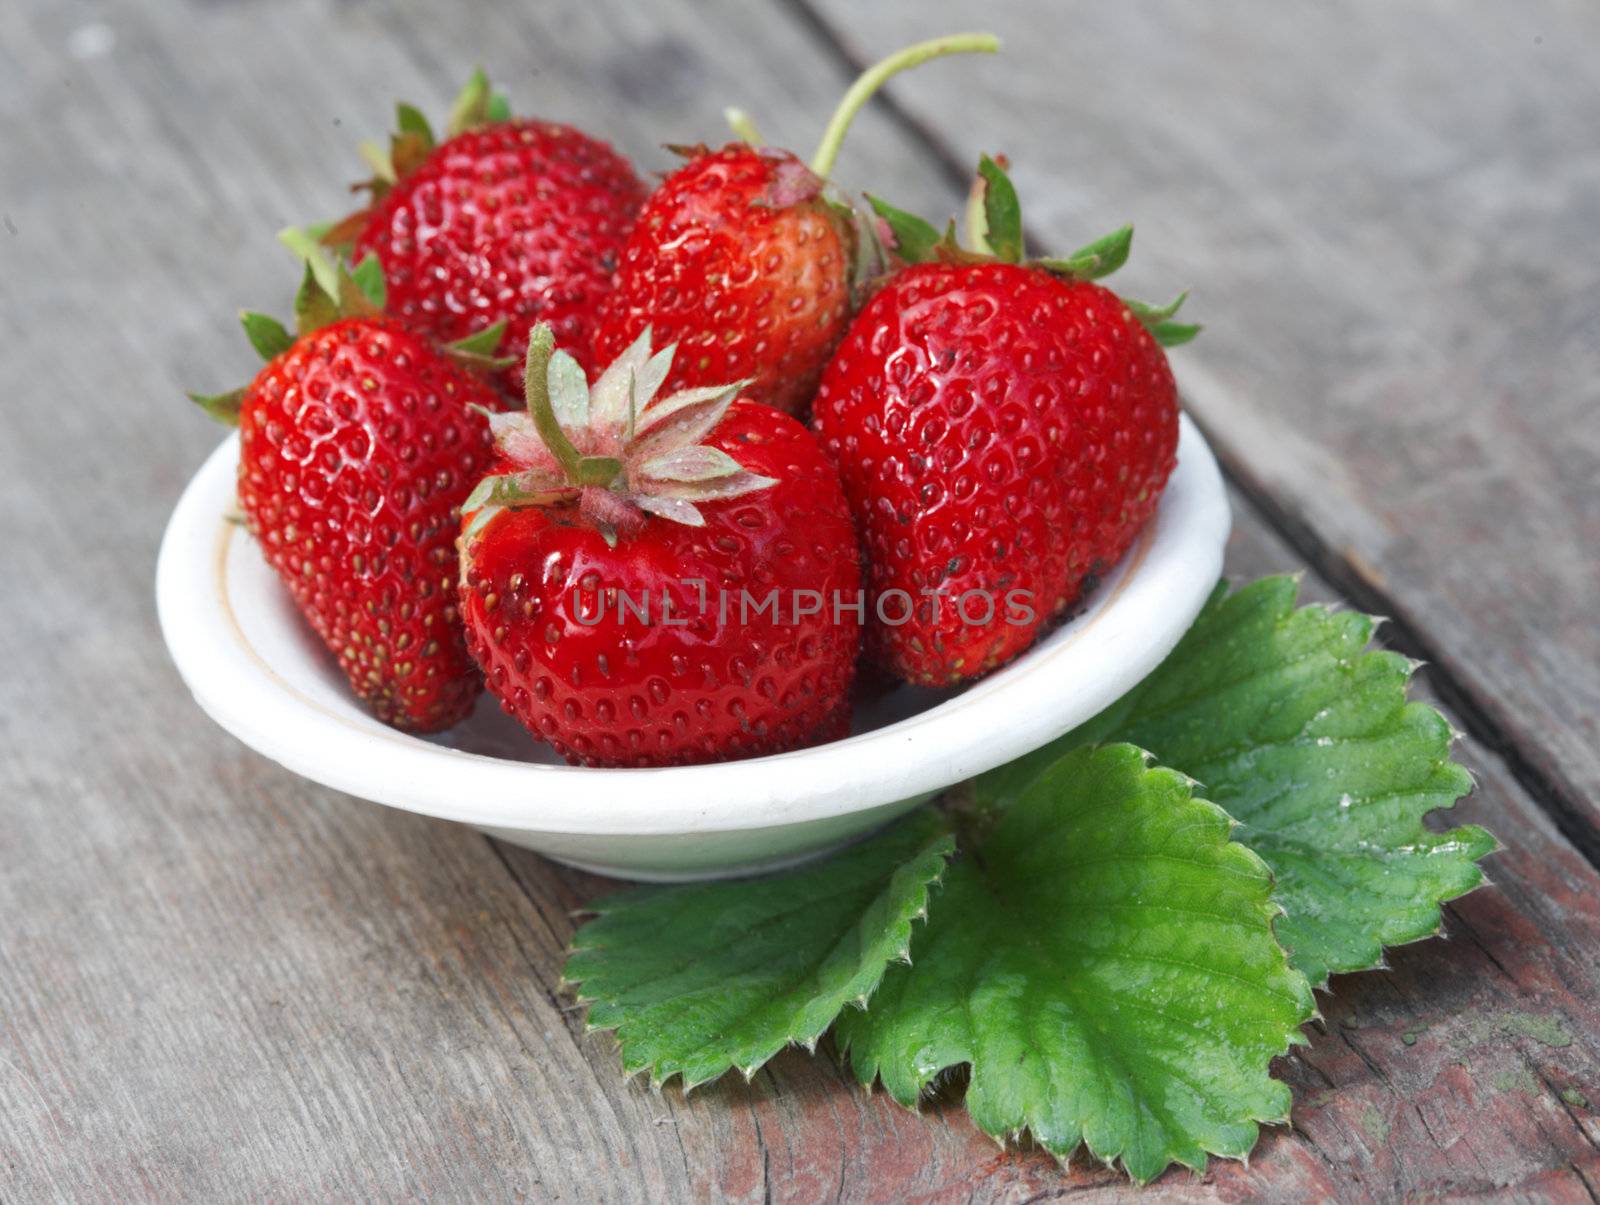 Strawberries by petrkurgan